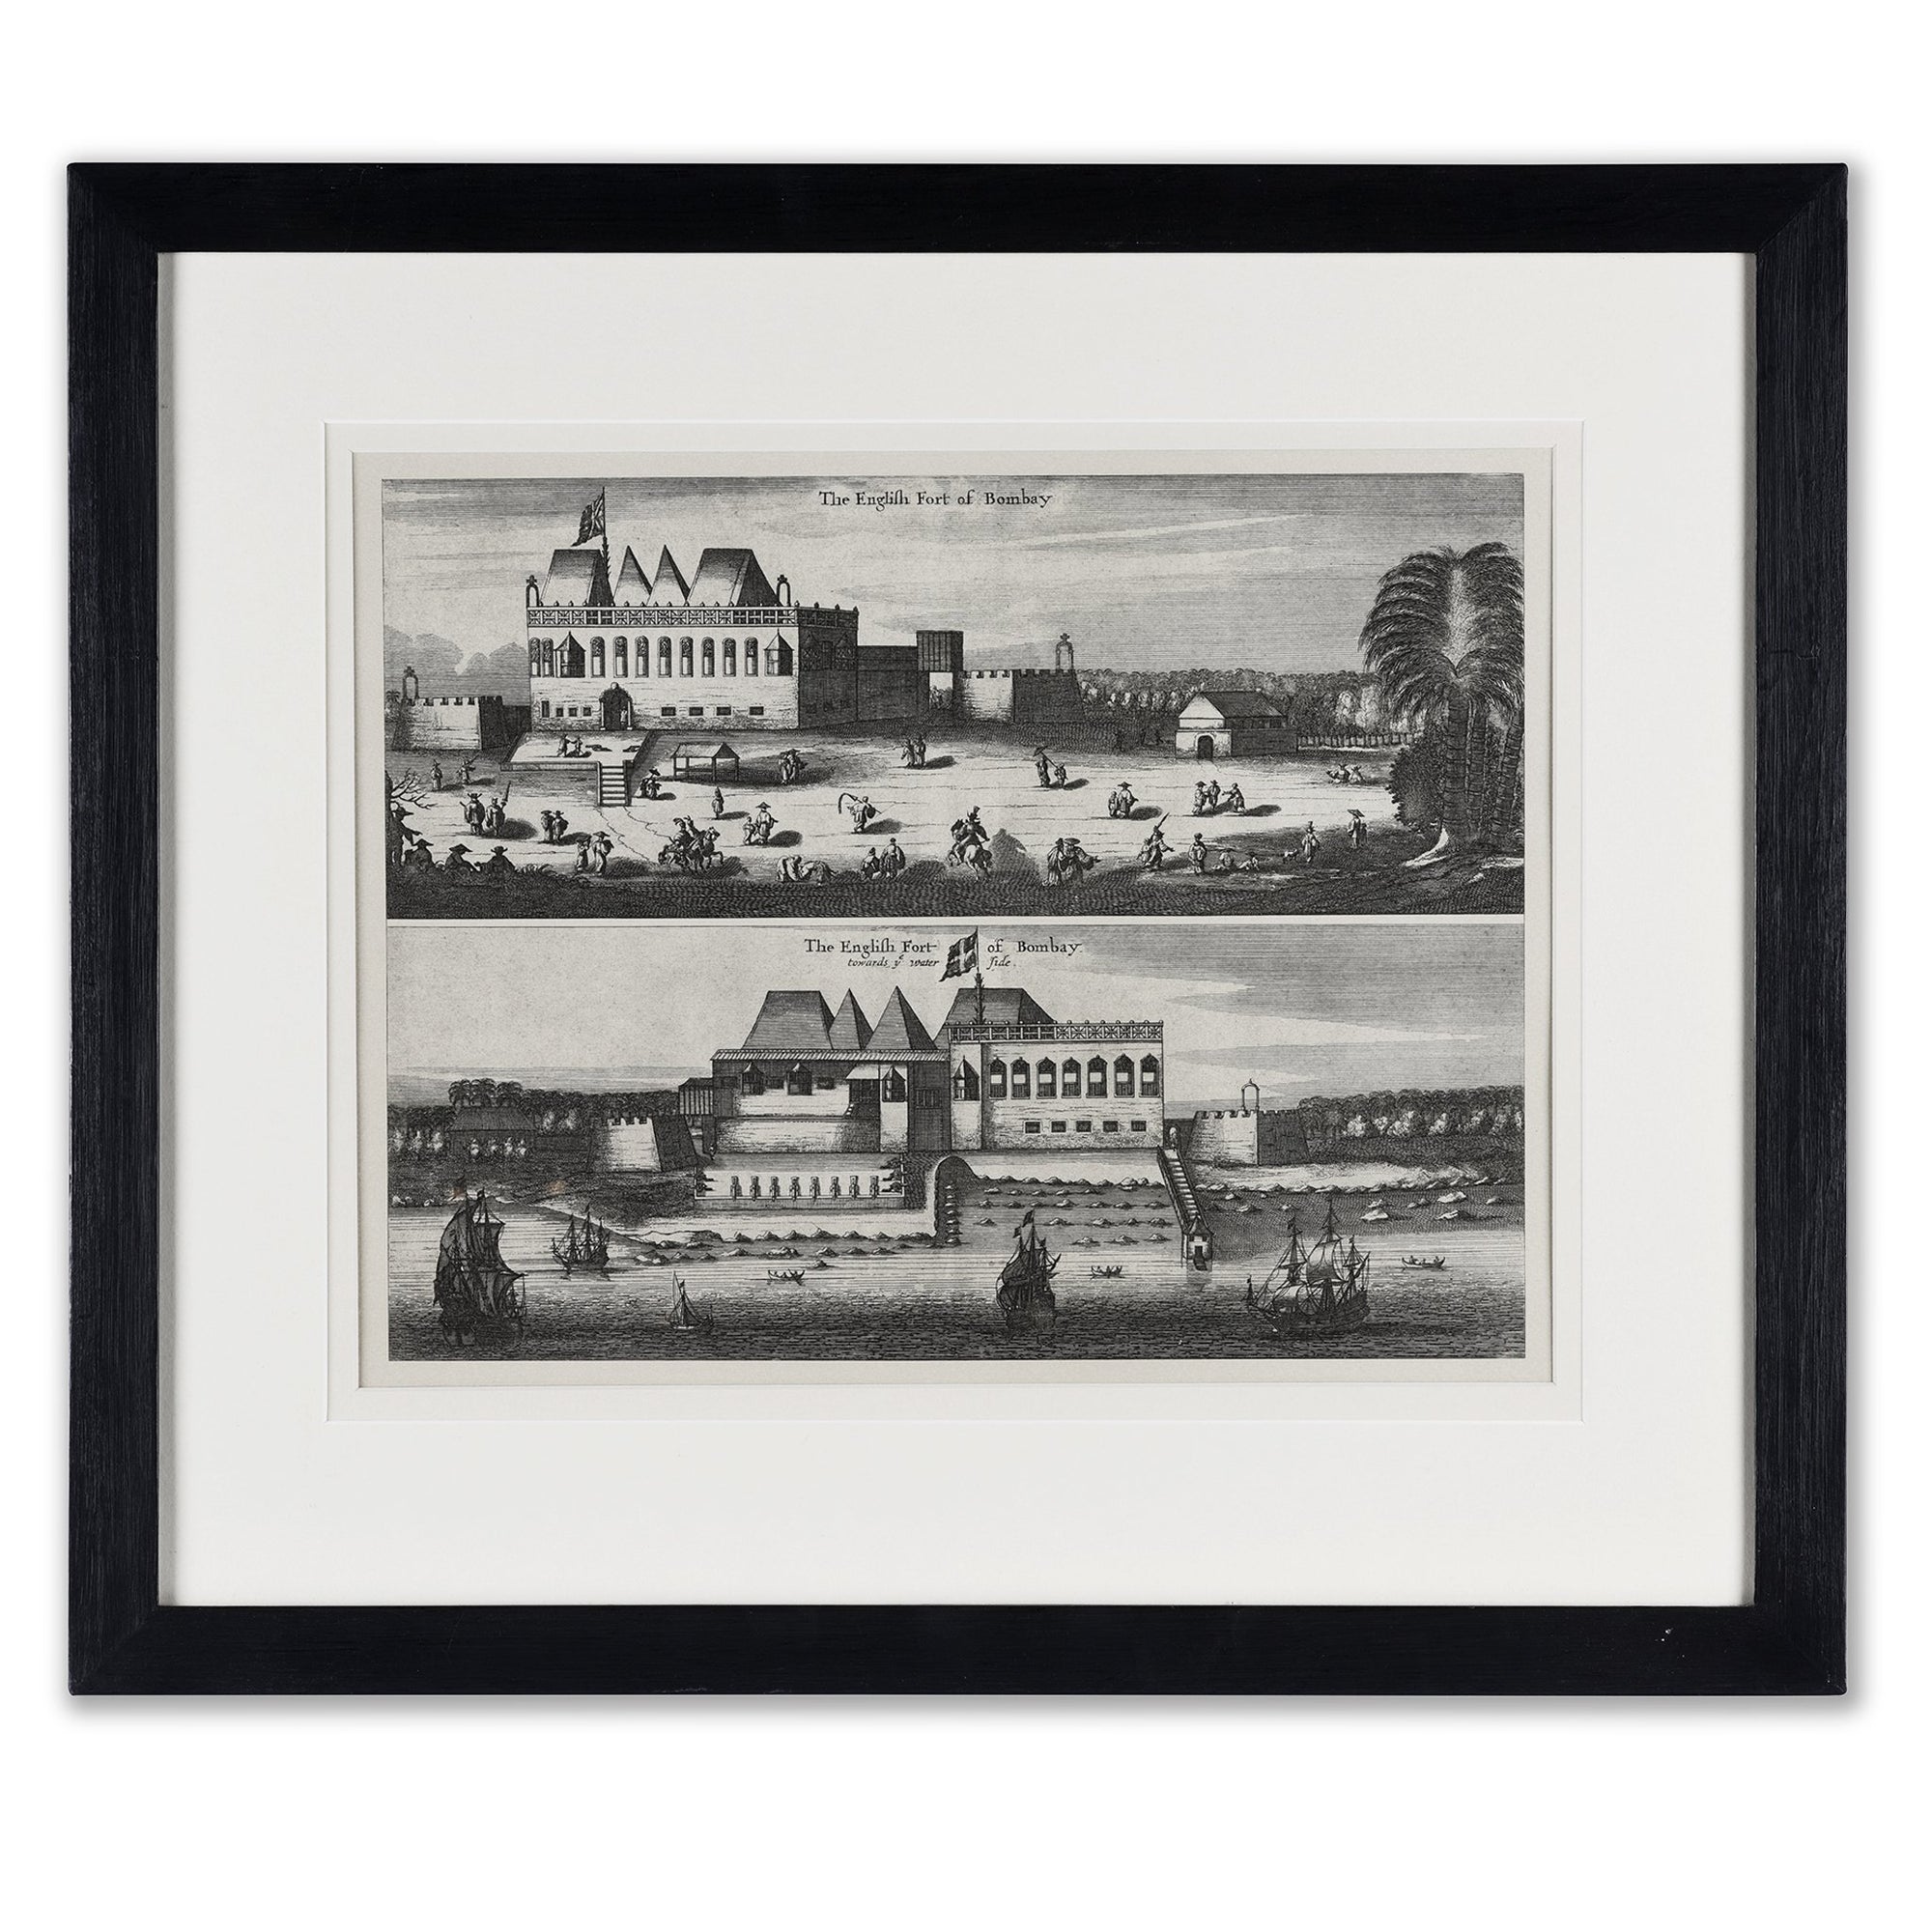 Framed Bombay Fort Land & Sea View - 1672 - 59 x 1.75 x 51 (w x d x h cms) - A4398V8